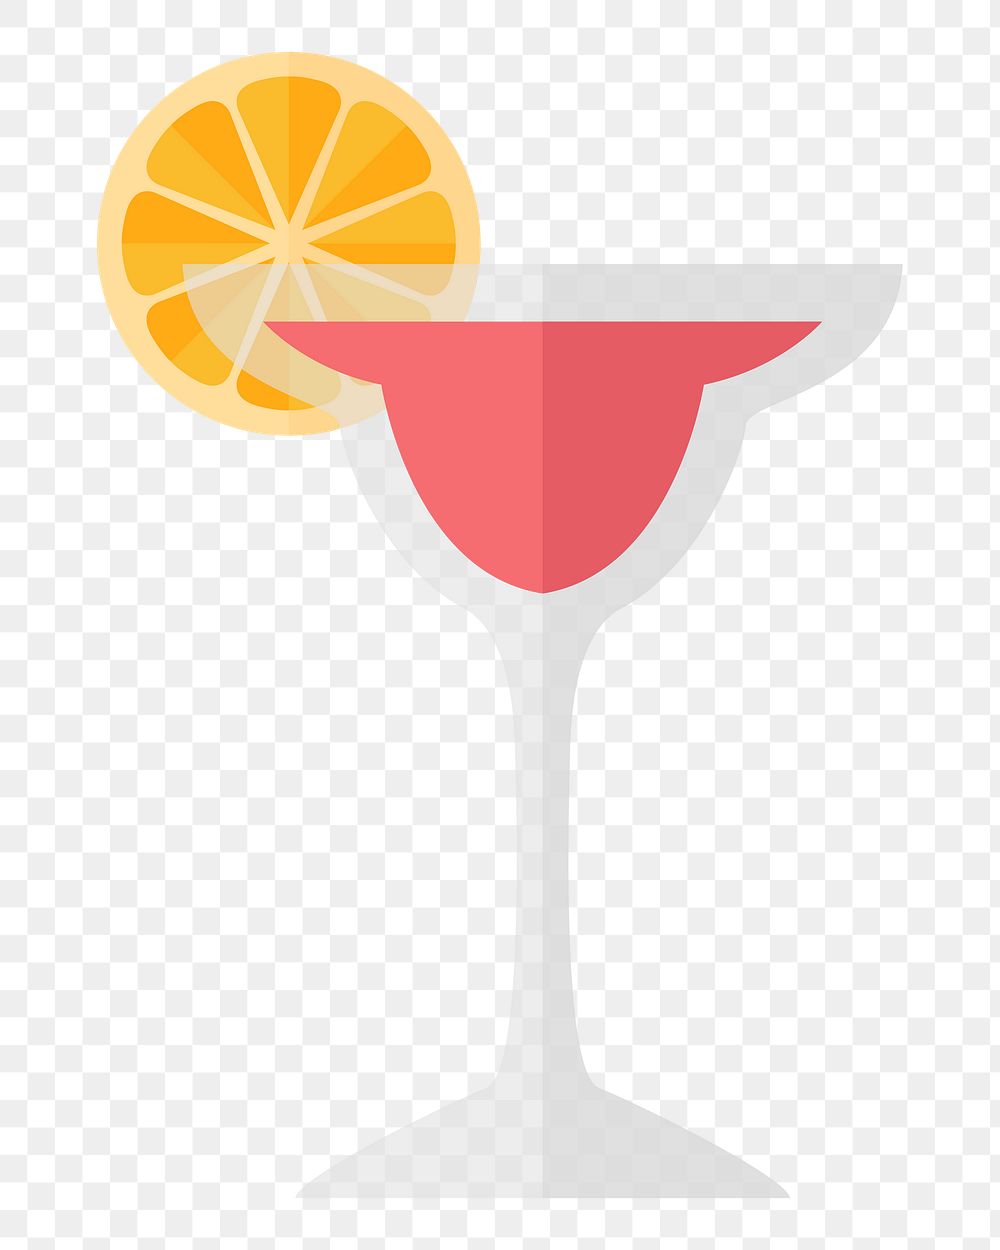 Cocktail drink png, transparent background